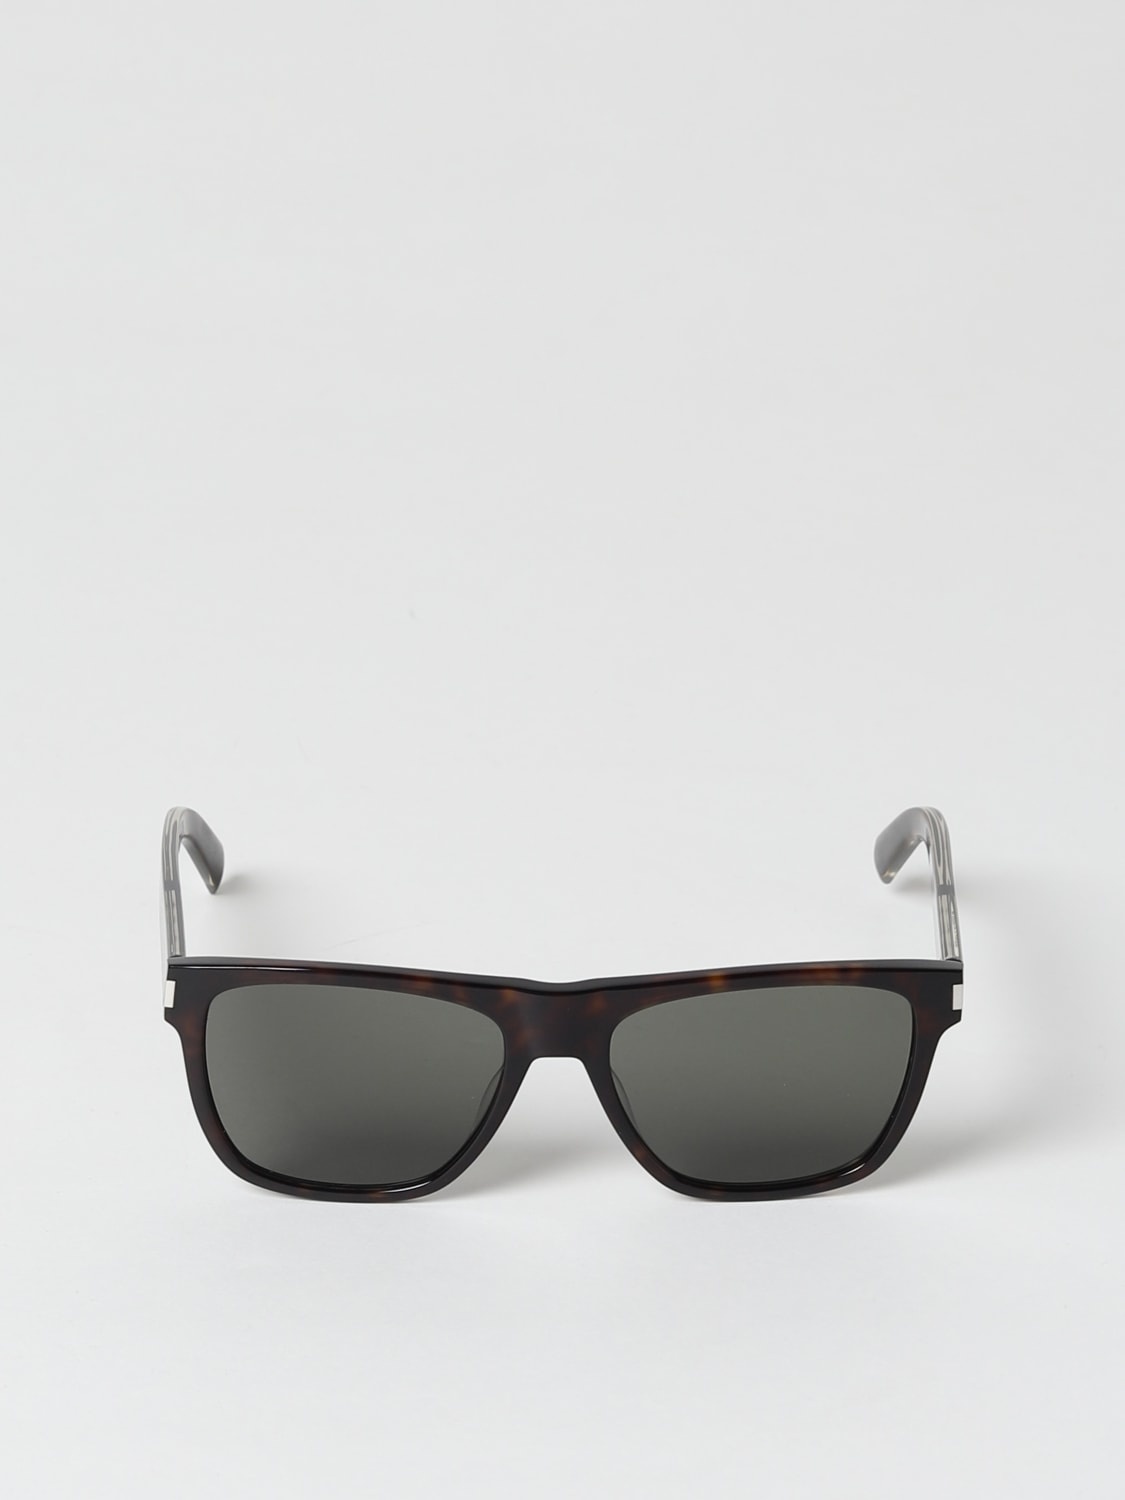 Saint Laurent sunglasses in acetate - 2